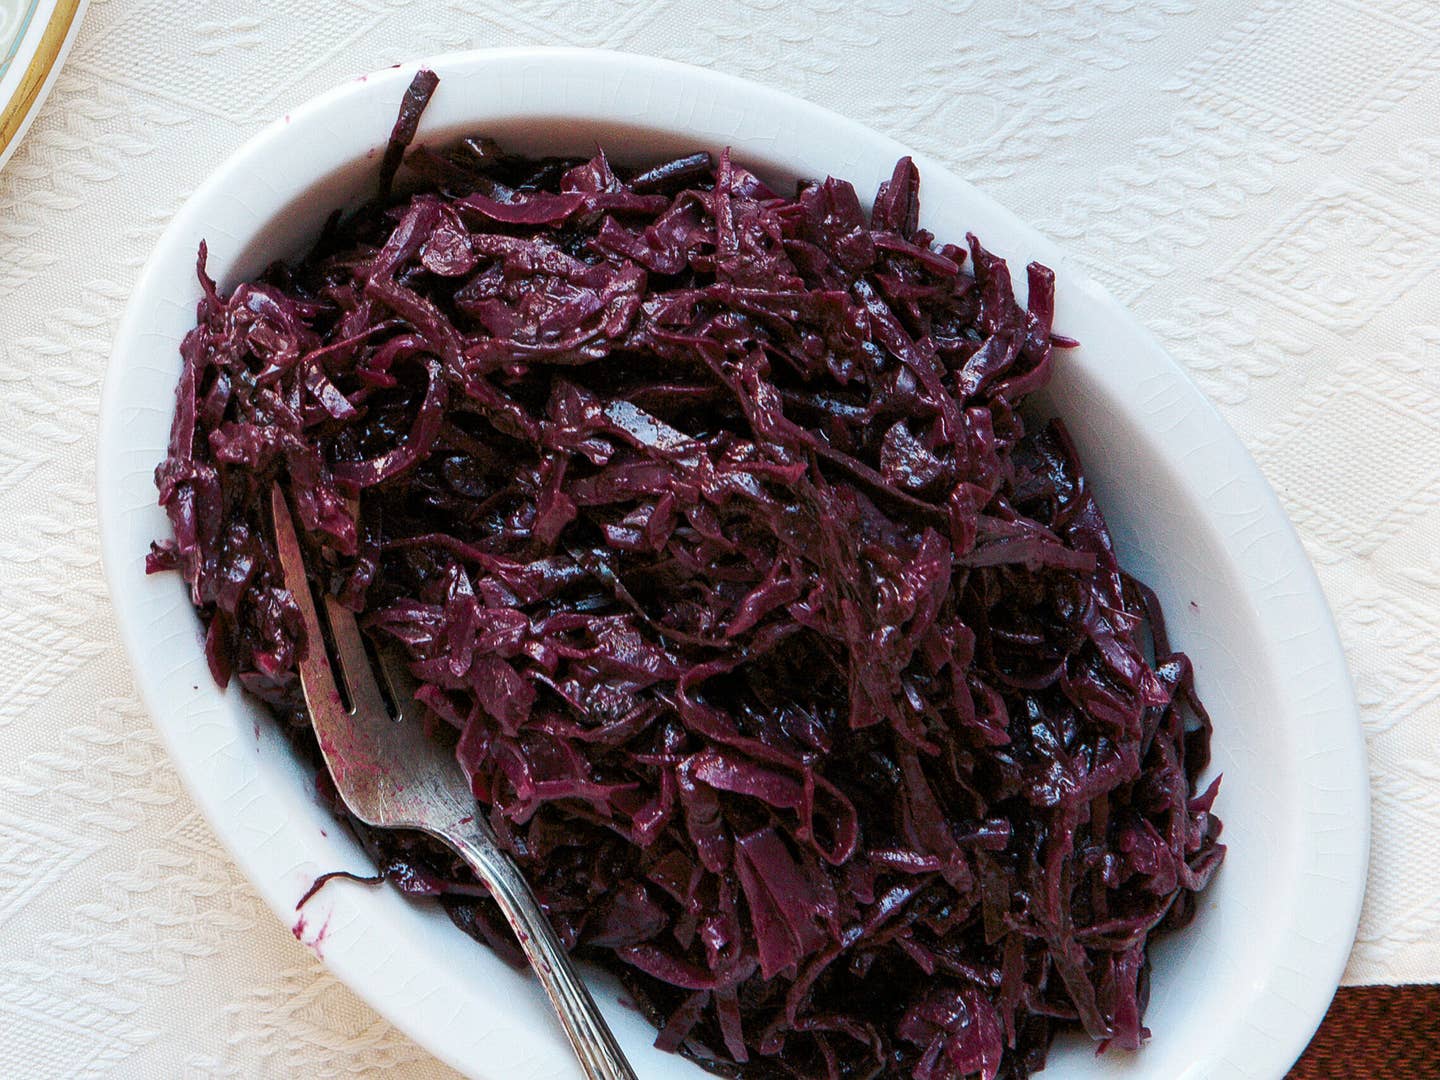 Spiced Cabbage with Blueberries (Kryddað Rauðkál með Bláberjum)